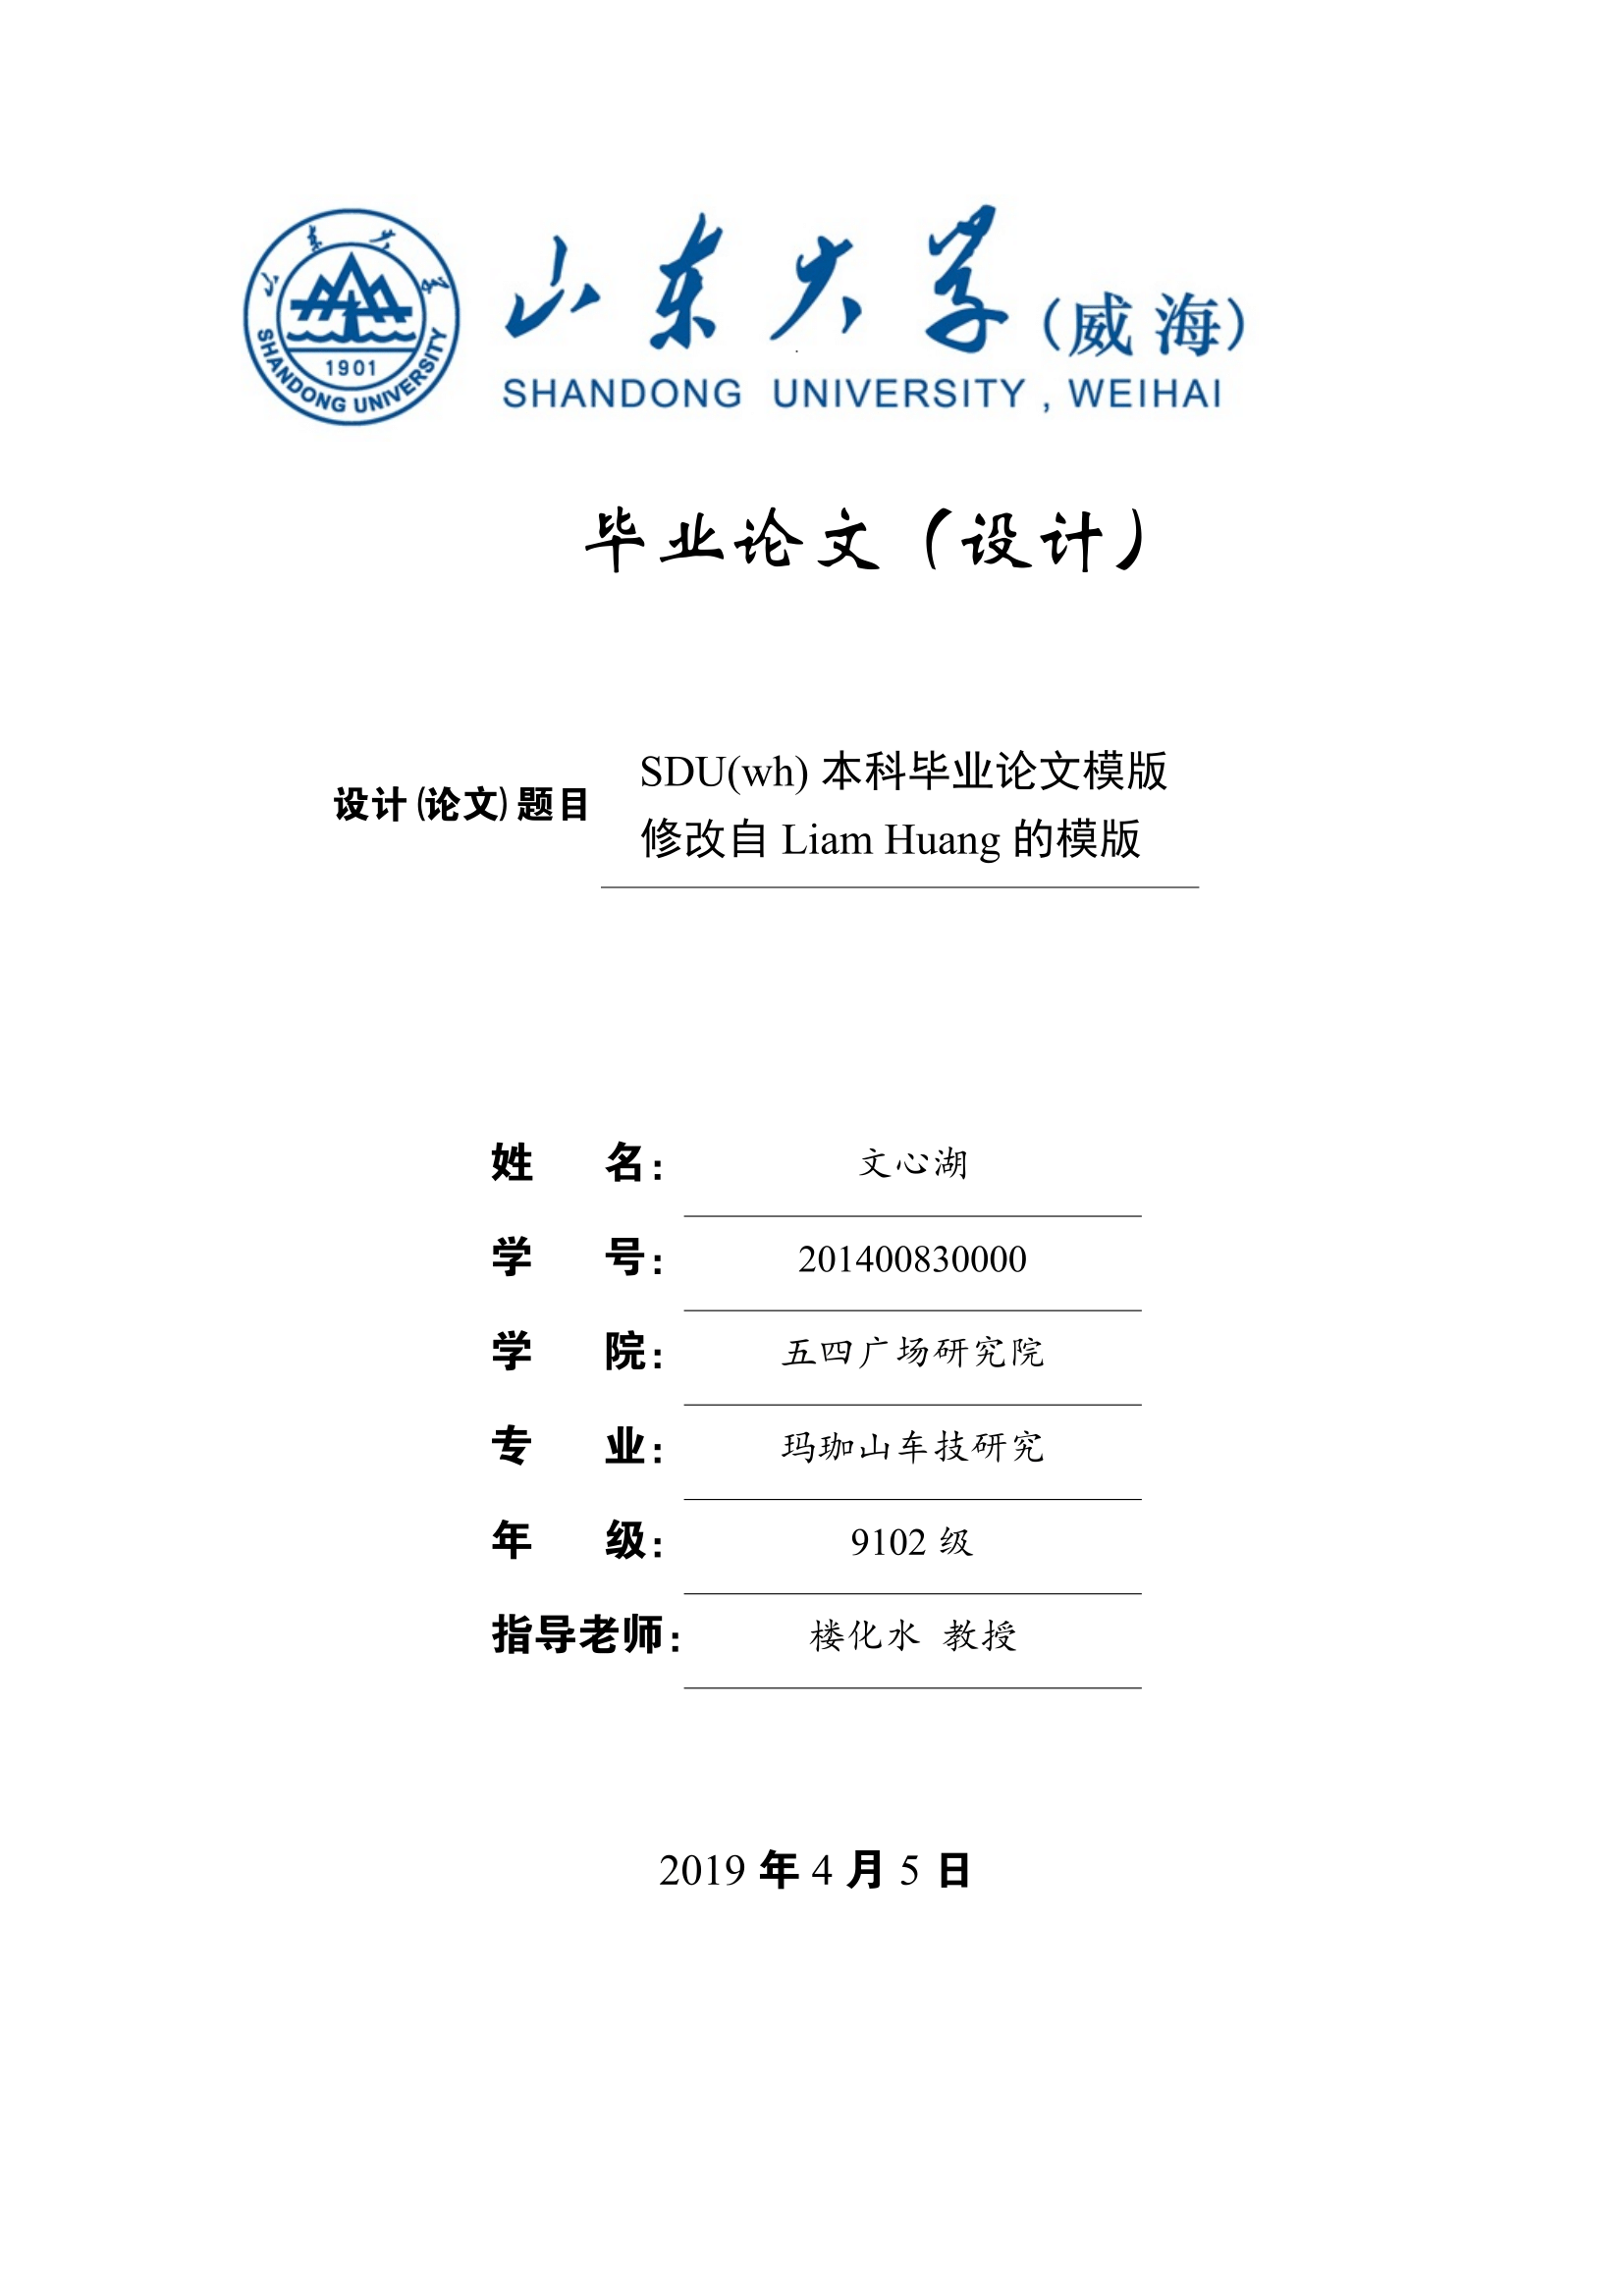 深圳大学本科毕业论文排版样例 - LaTeX科技排版工作室